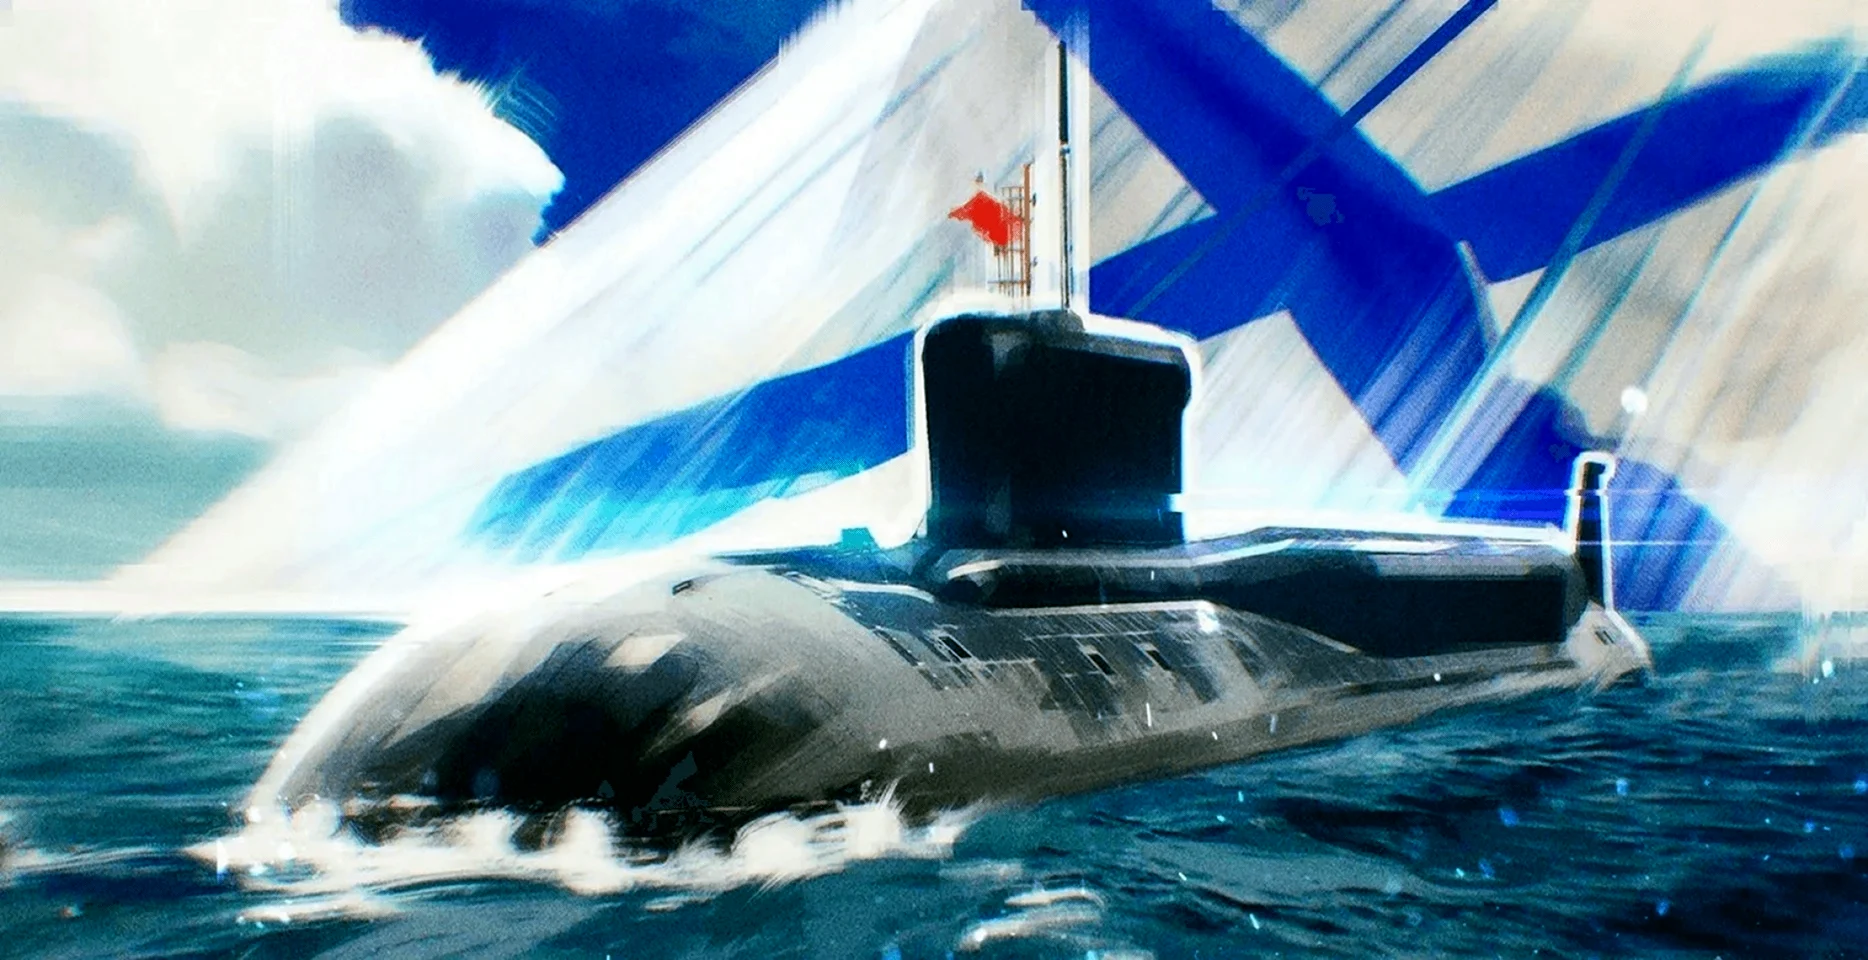 Подводная лодка и Андреевский флаг